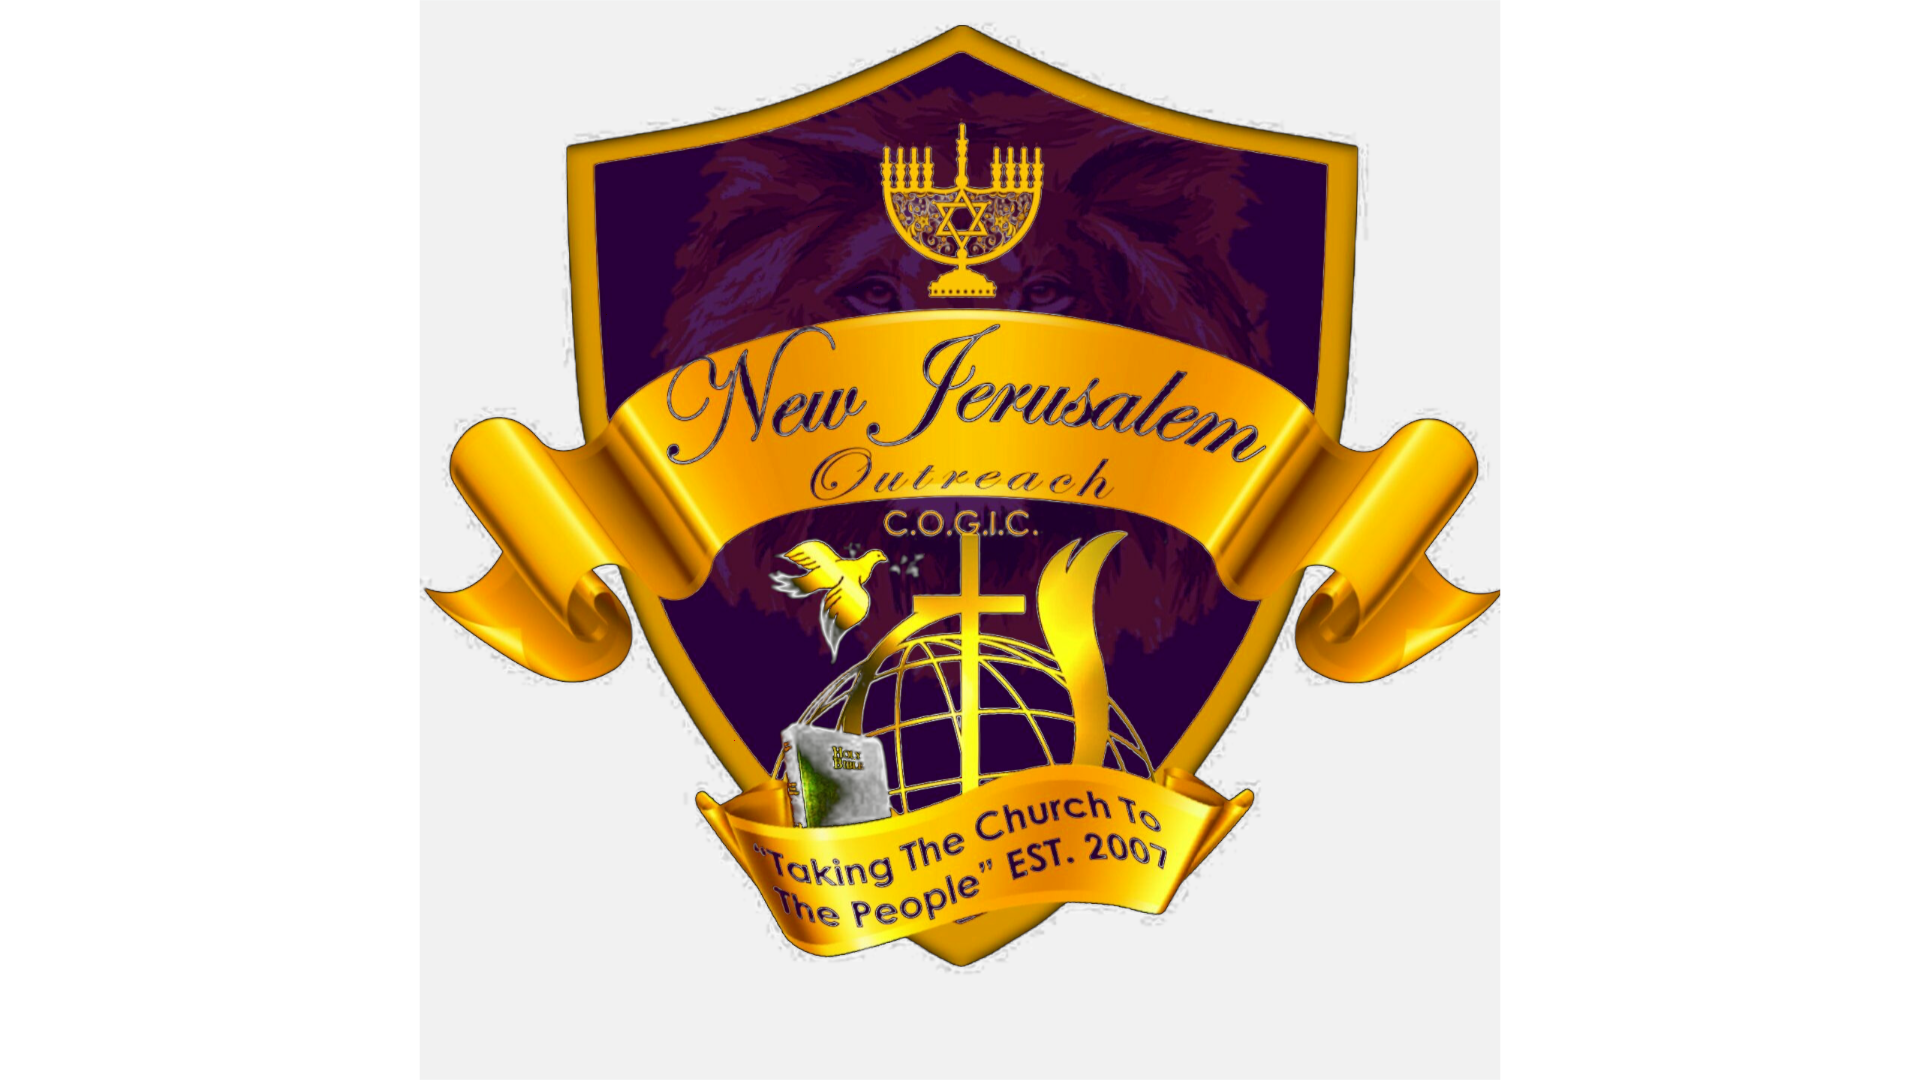 New Jerusalem Outreach COGIC